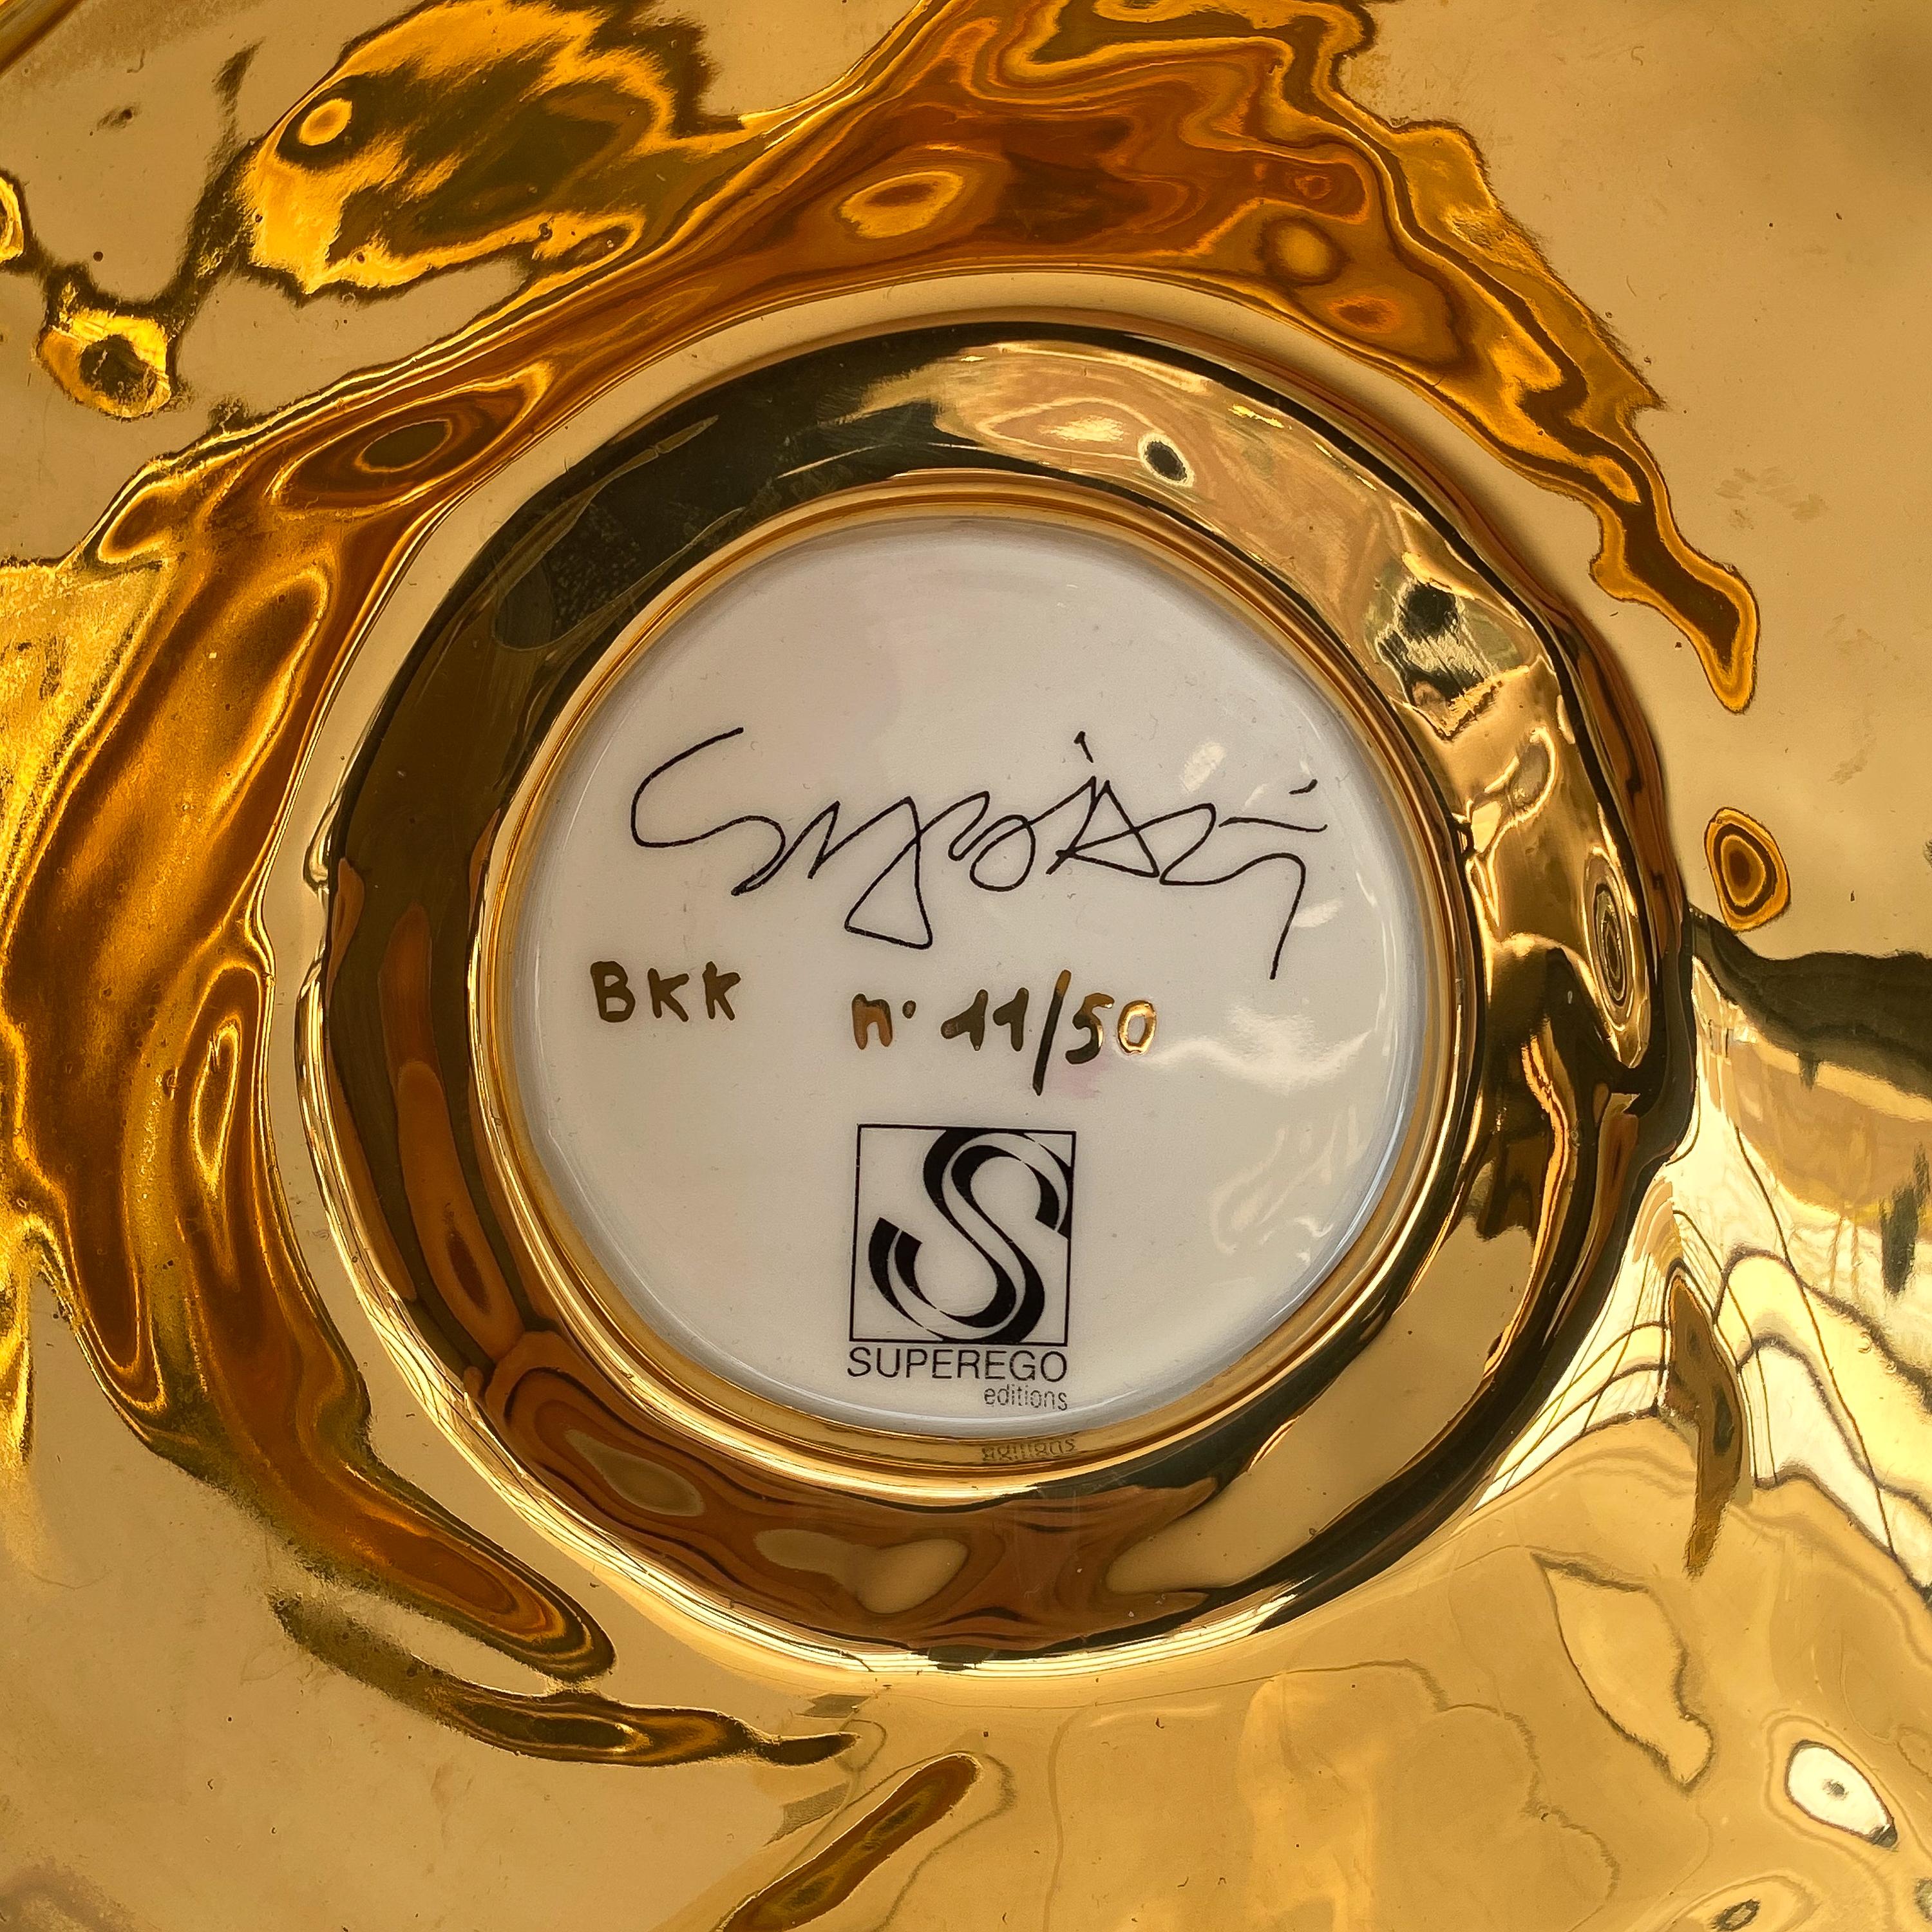 Sergio Asti Gold Toky BKK Vase by Superego 2